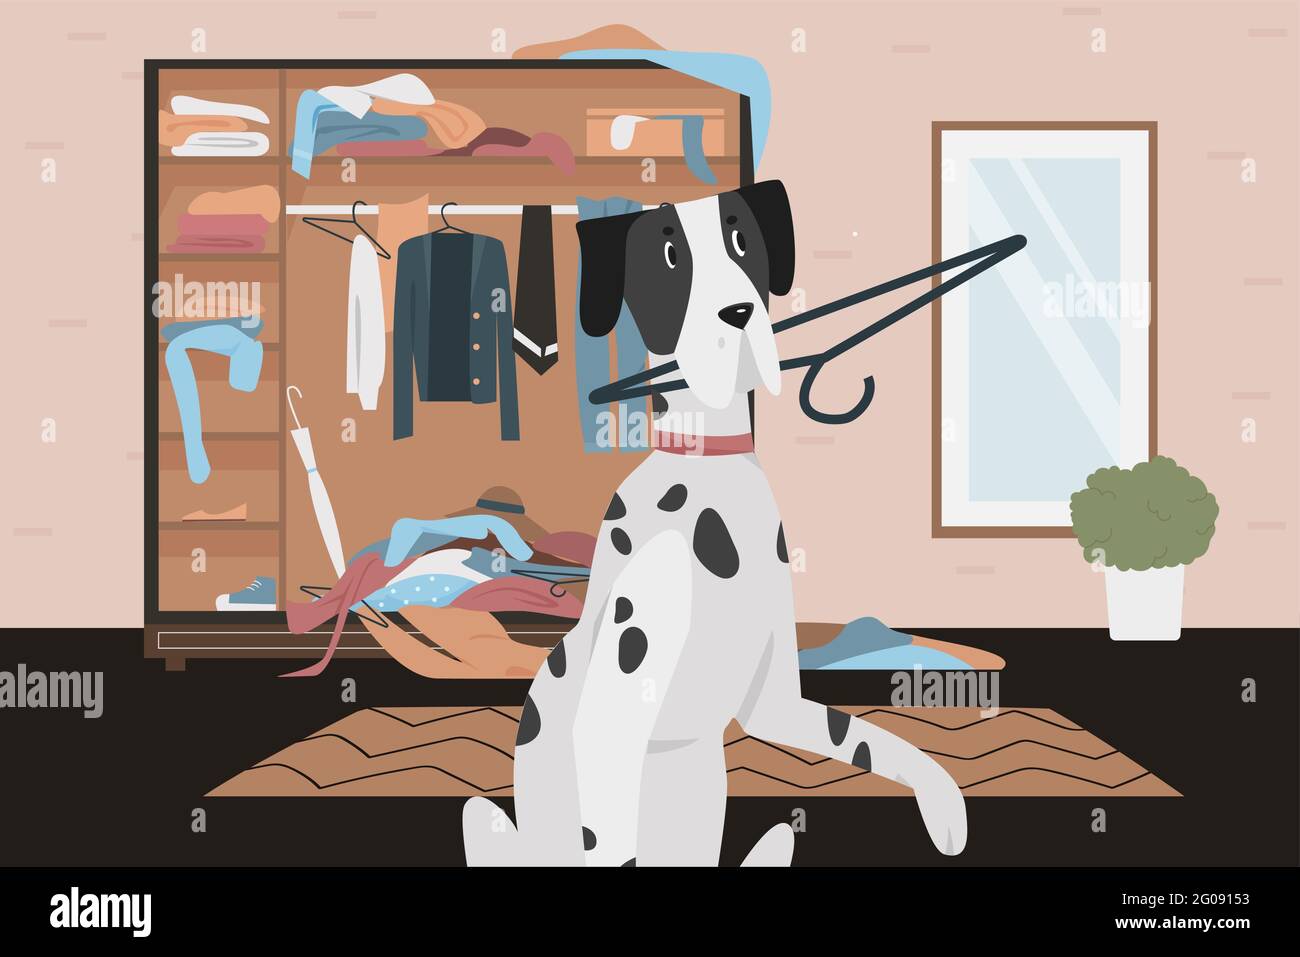 Schuldig frechen Hund mit schlechten Gewohnheiten Verhalten Vektor Illustration. Cartoon spielerisch dalmatinischen Hund hält Kleidung Kleiderbügel in den Zähnen, spielen in der Garderobe, Heimzimmer innen im Chaos Chaos Chaos von Heimtierspiel Stock Vektor